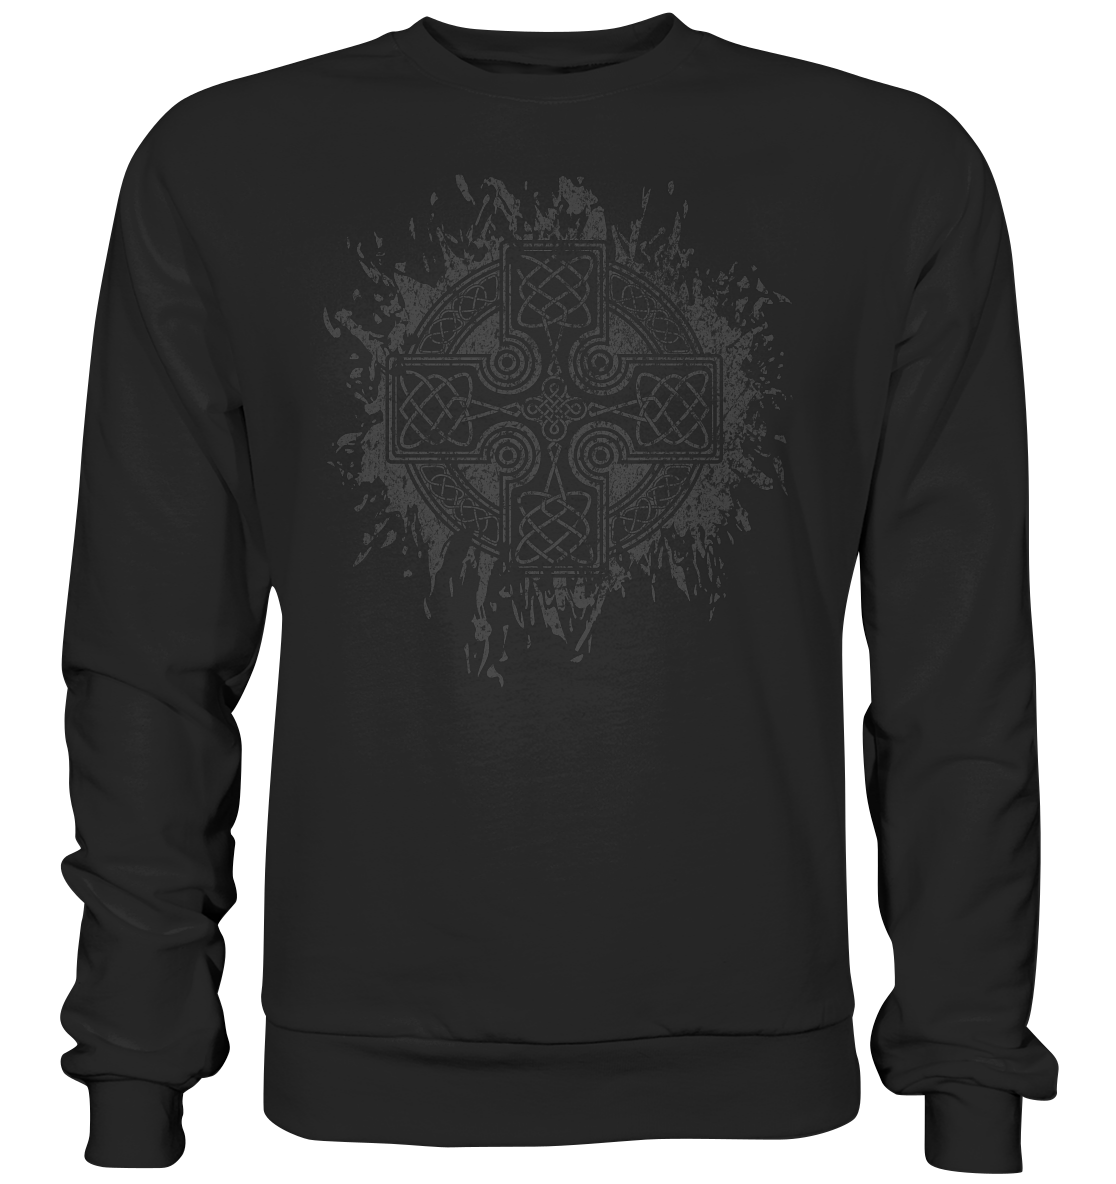 Celtic Cross "Splatter" - Premium Sweatshirt